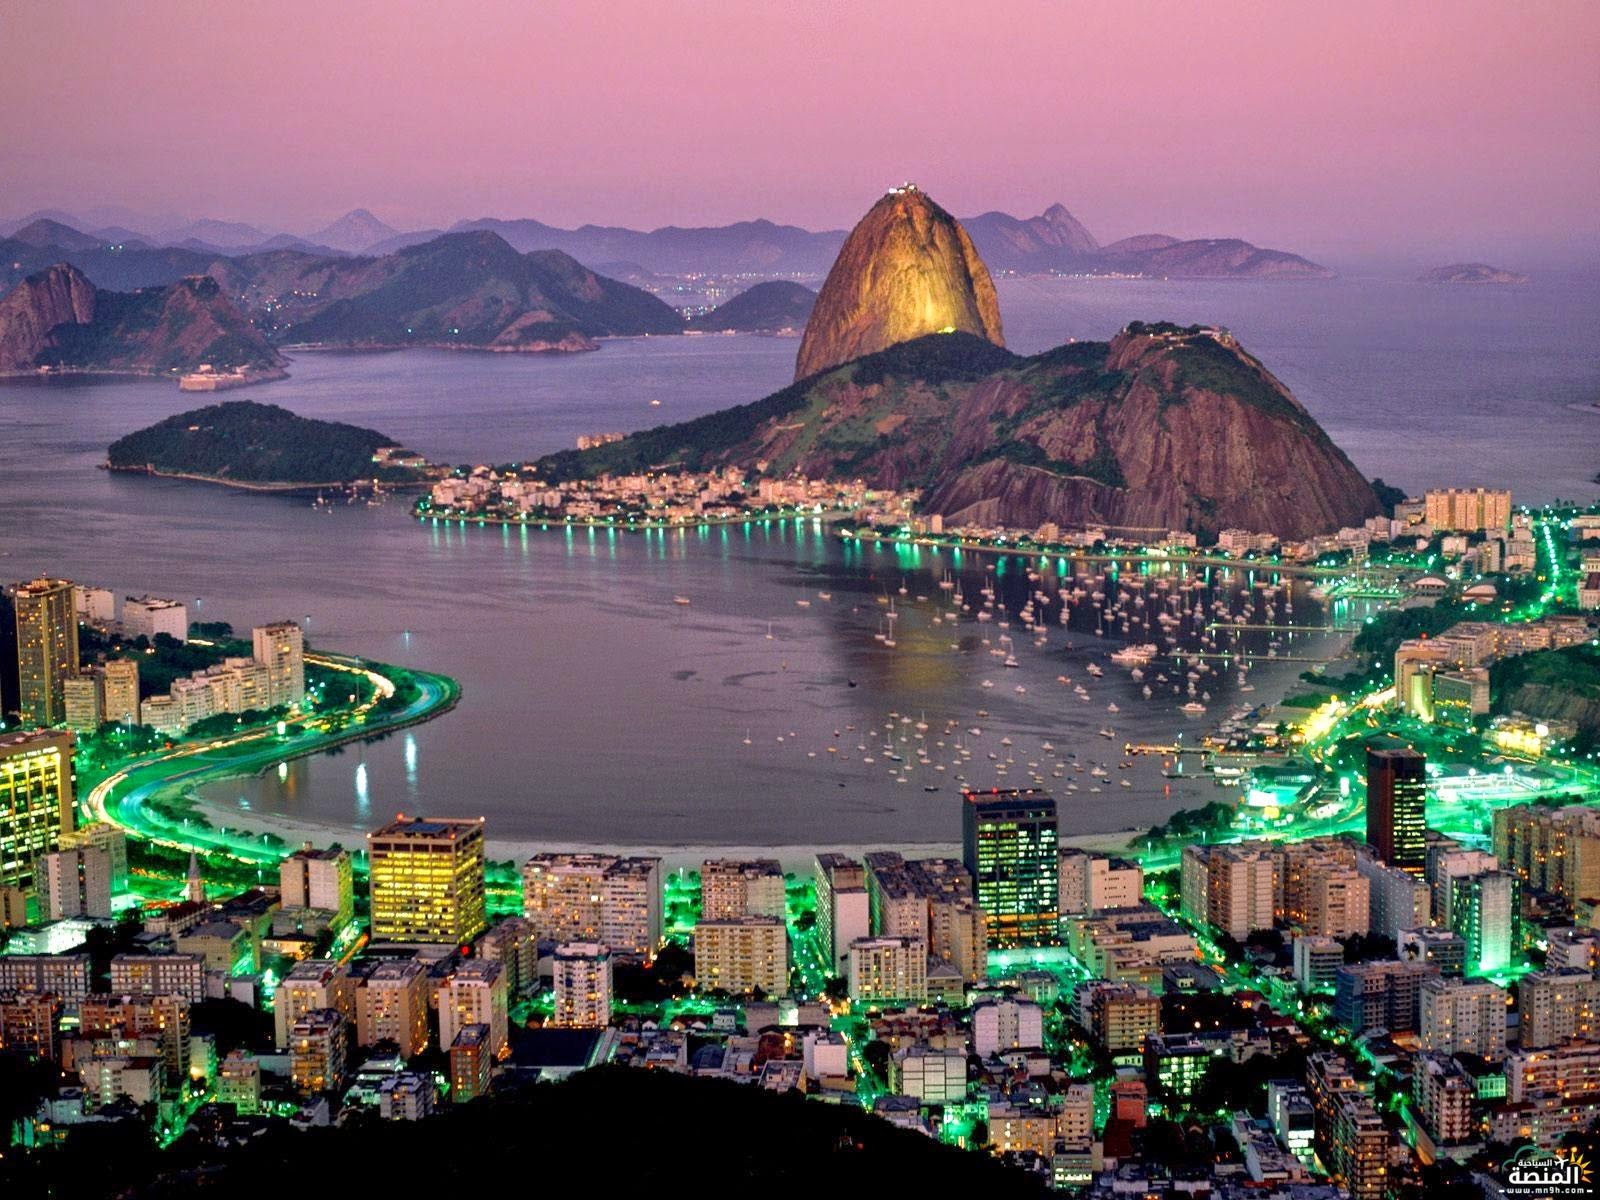 Rio Degniro most beautiful cities in Brazil pic